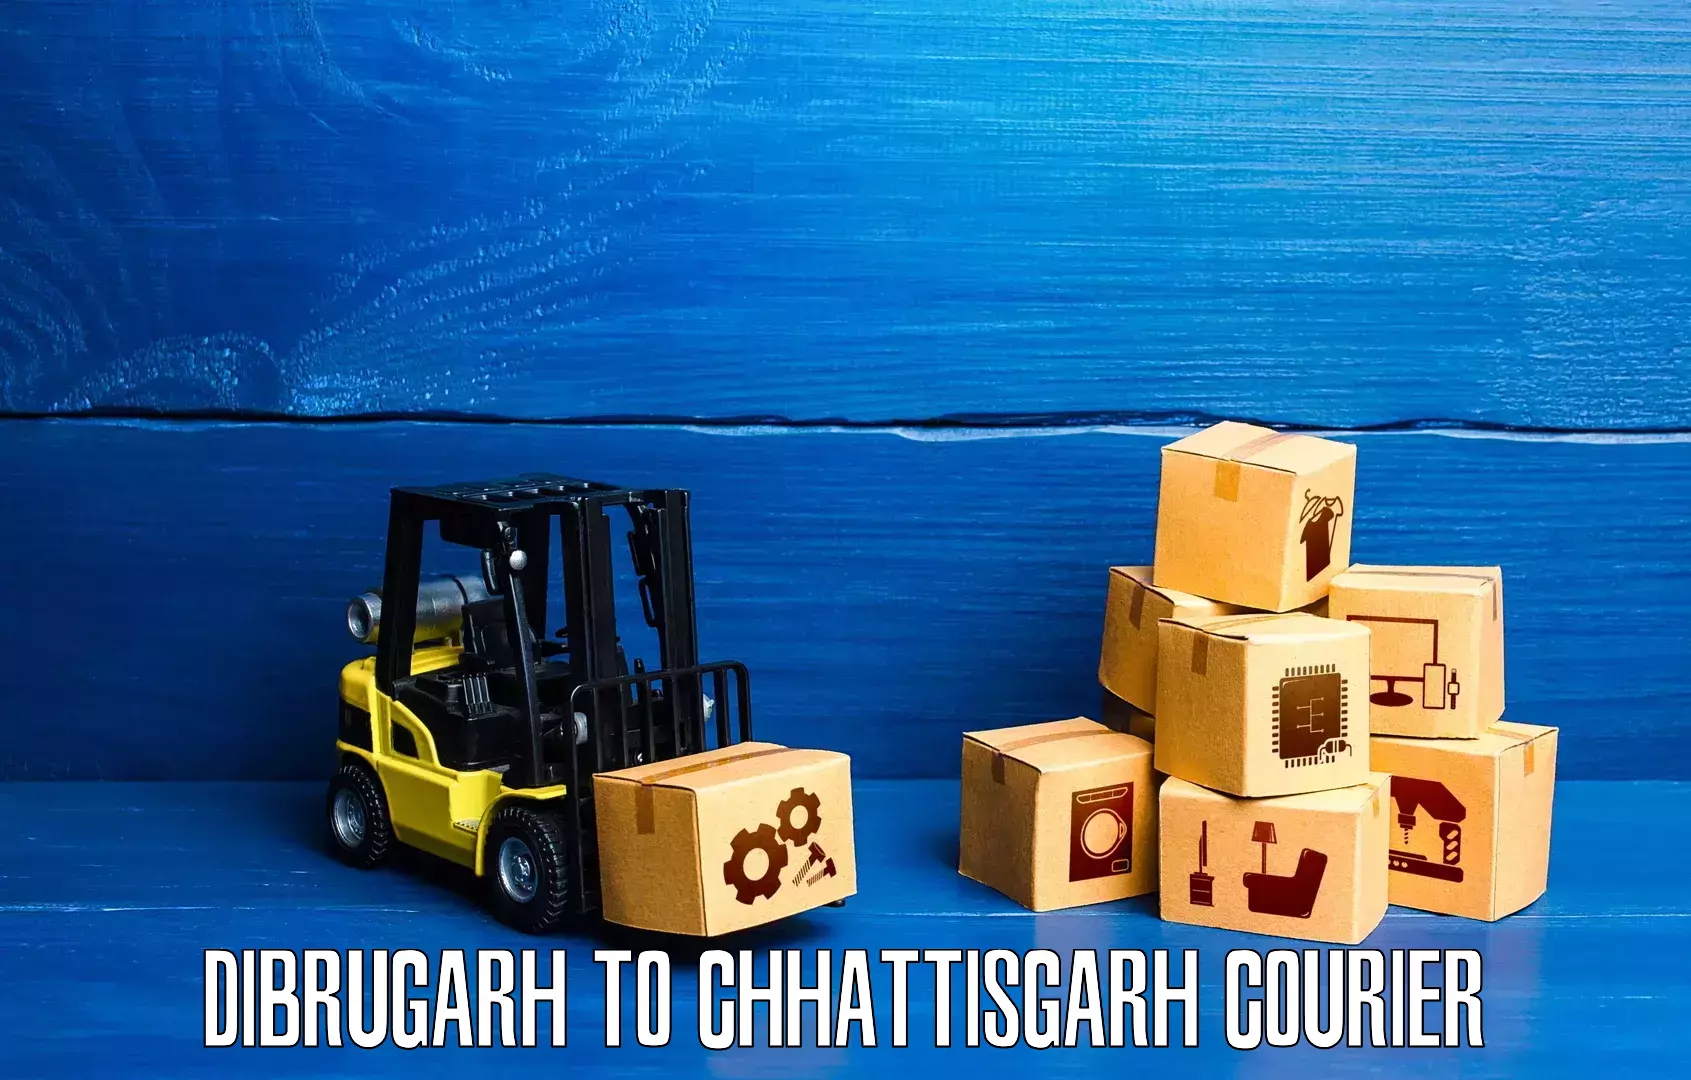 Digital courier platforms Dibrugarh to Bijapur Chhattisgarh